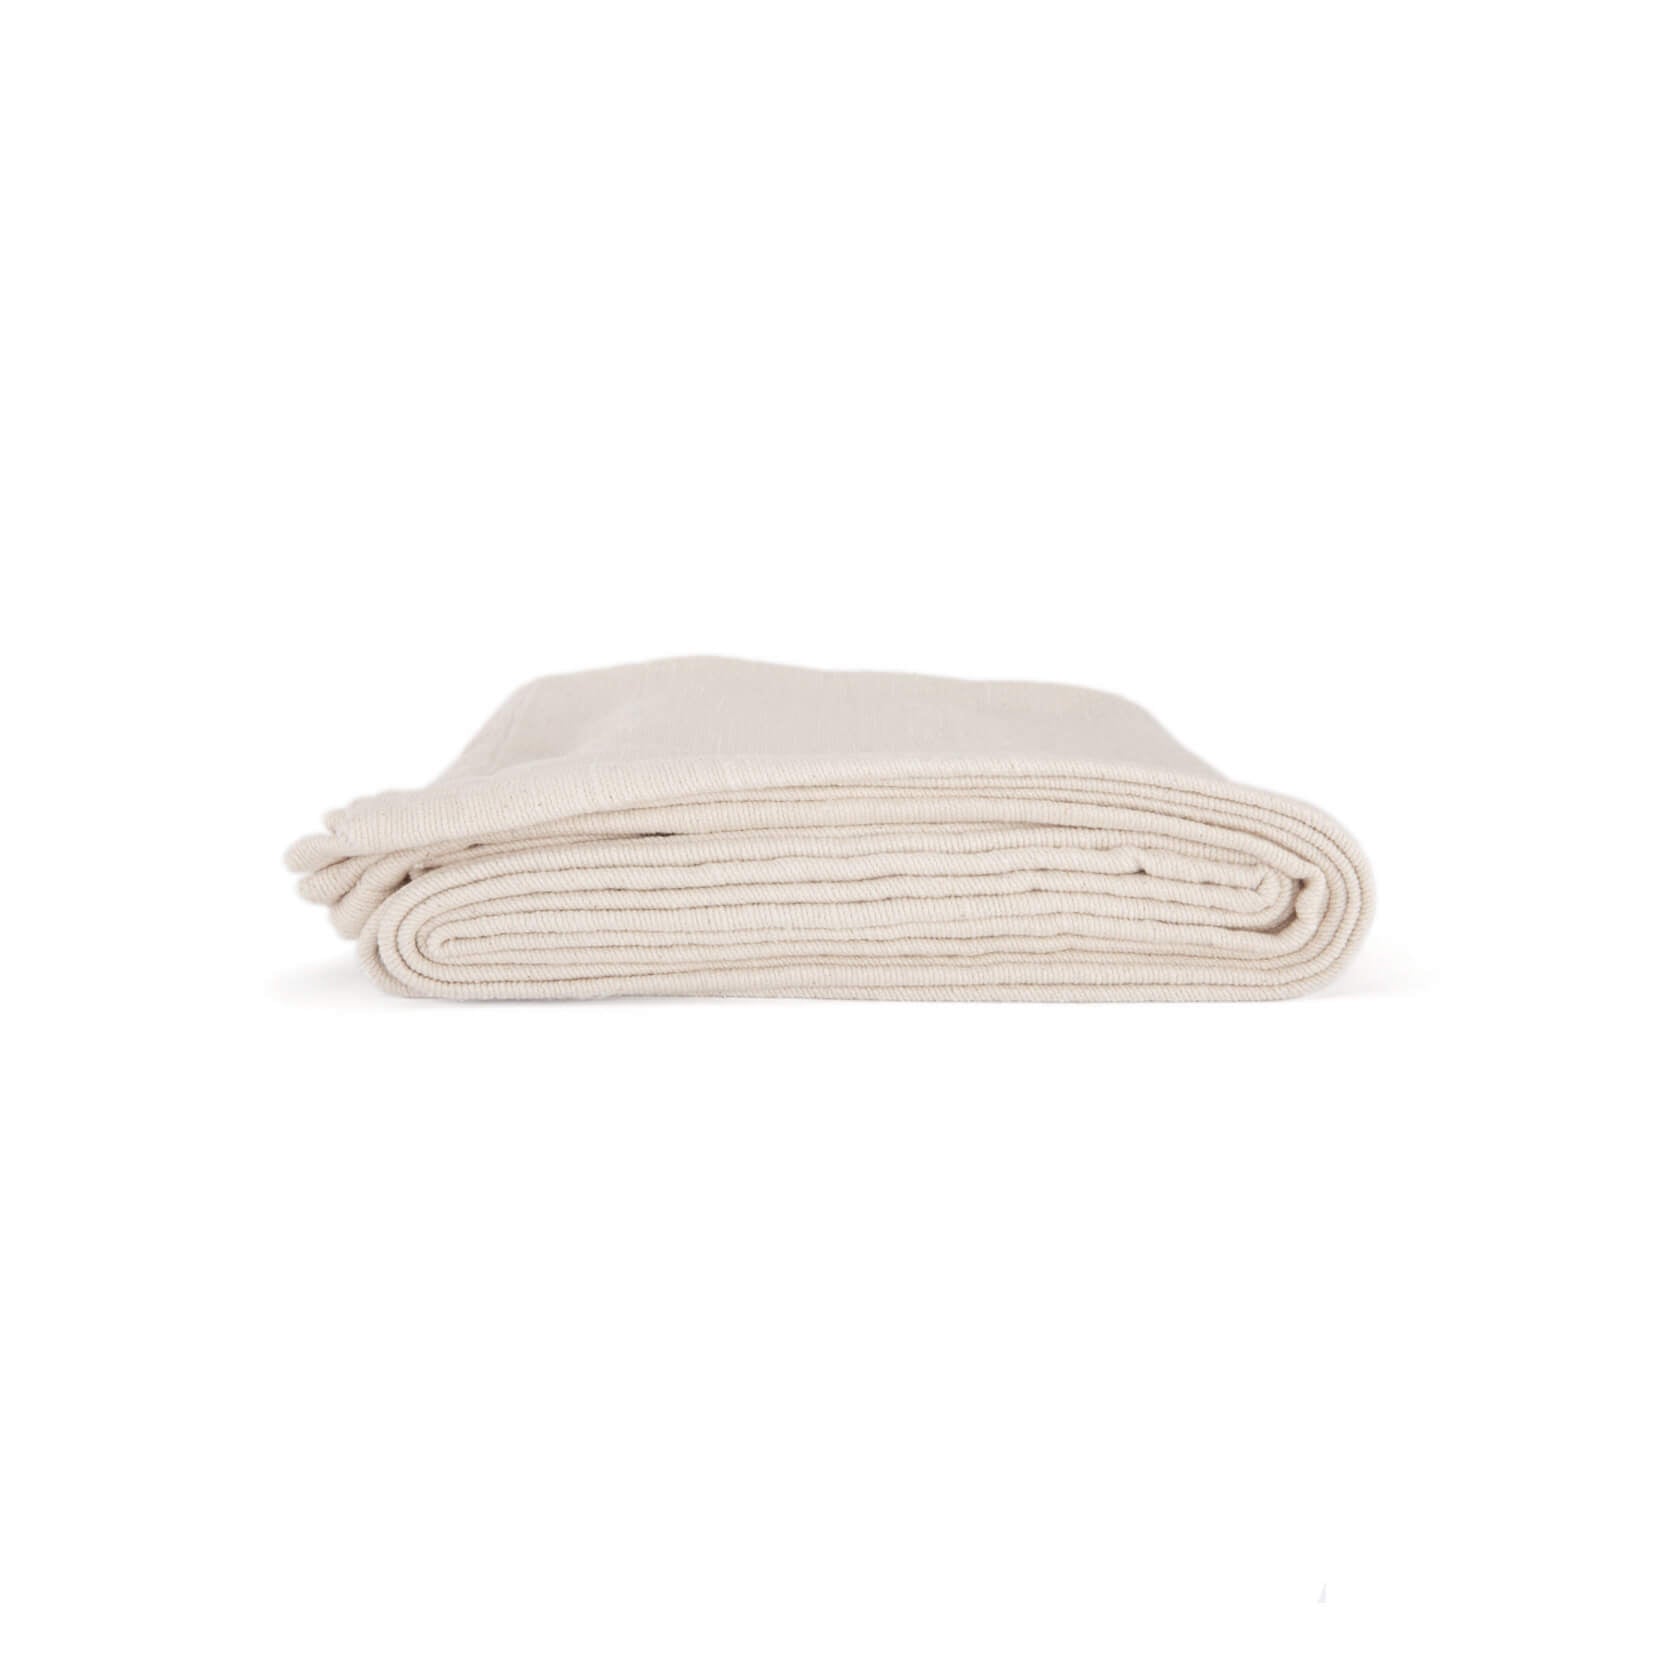 Folded cotton yoga blanket